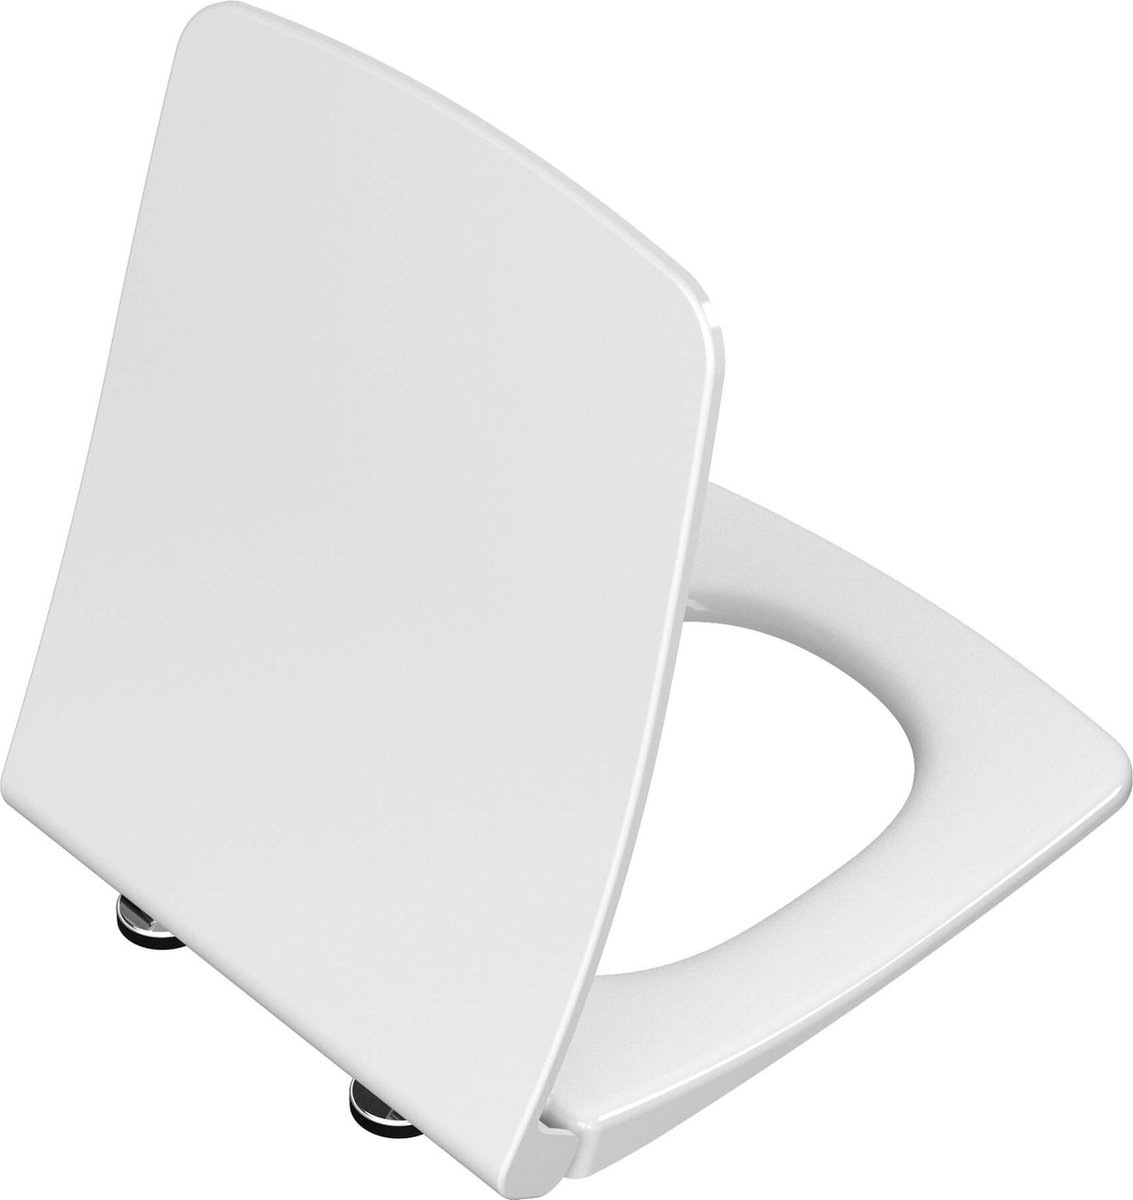 VitrA Metropole Soft Slim WC Seat-DP-White